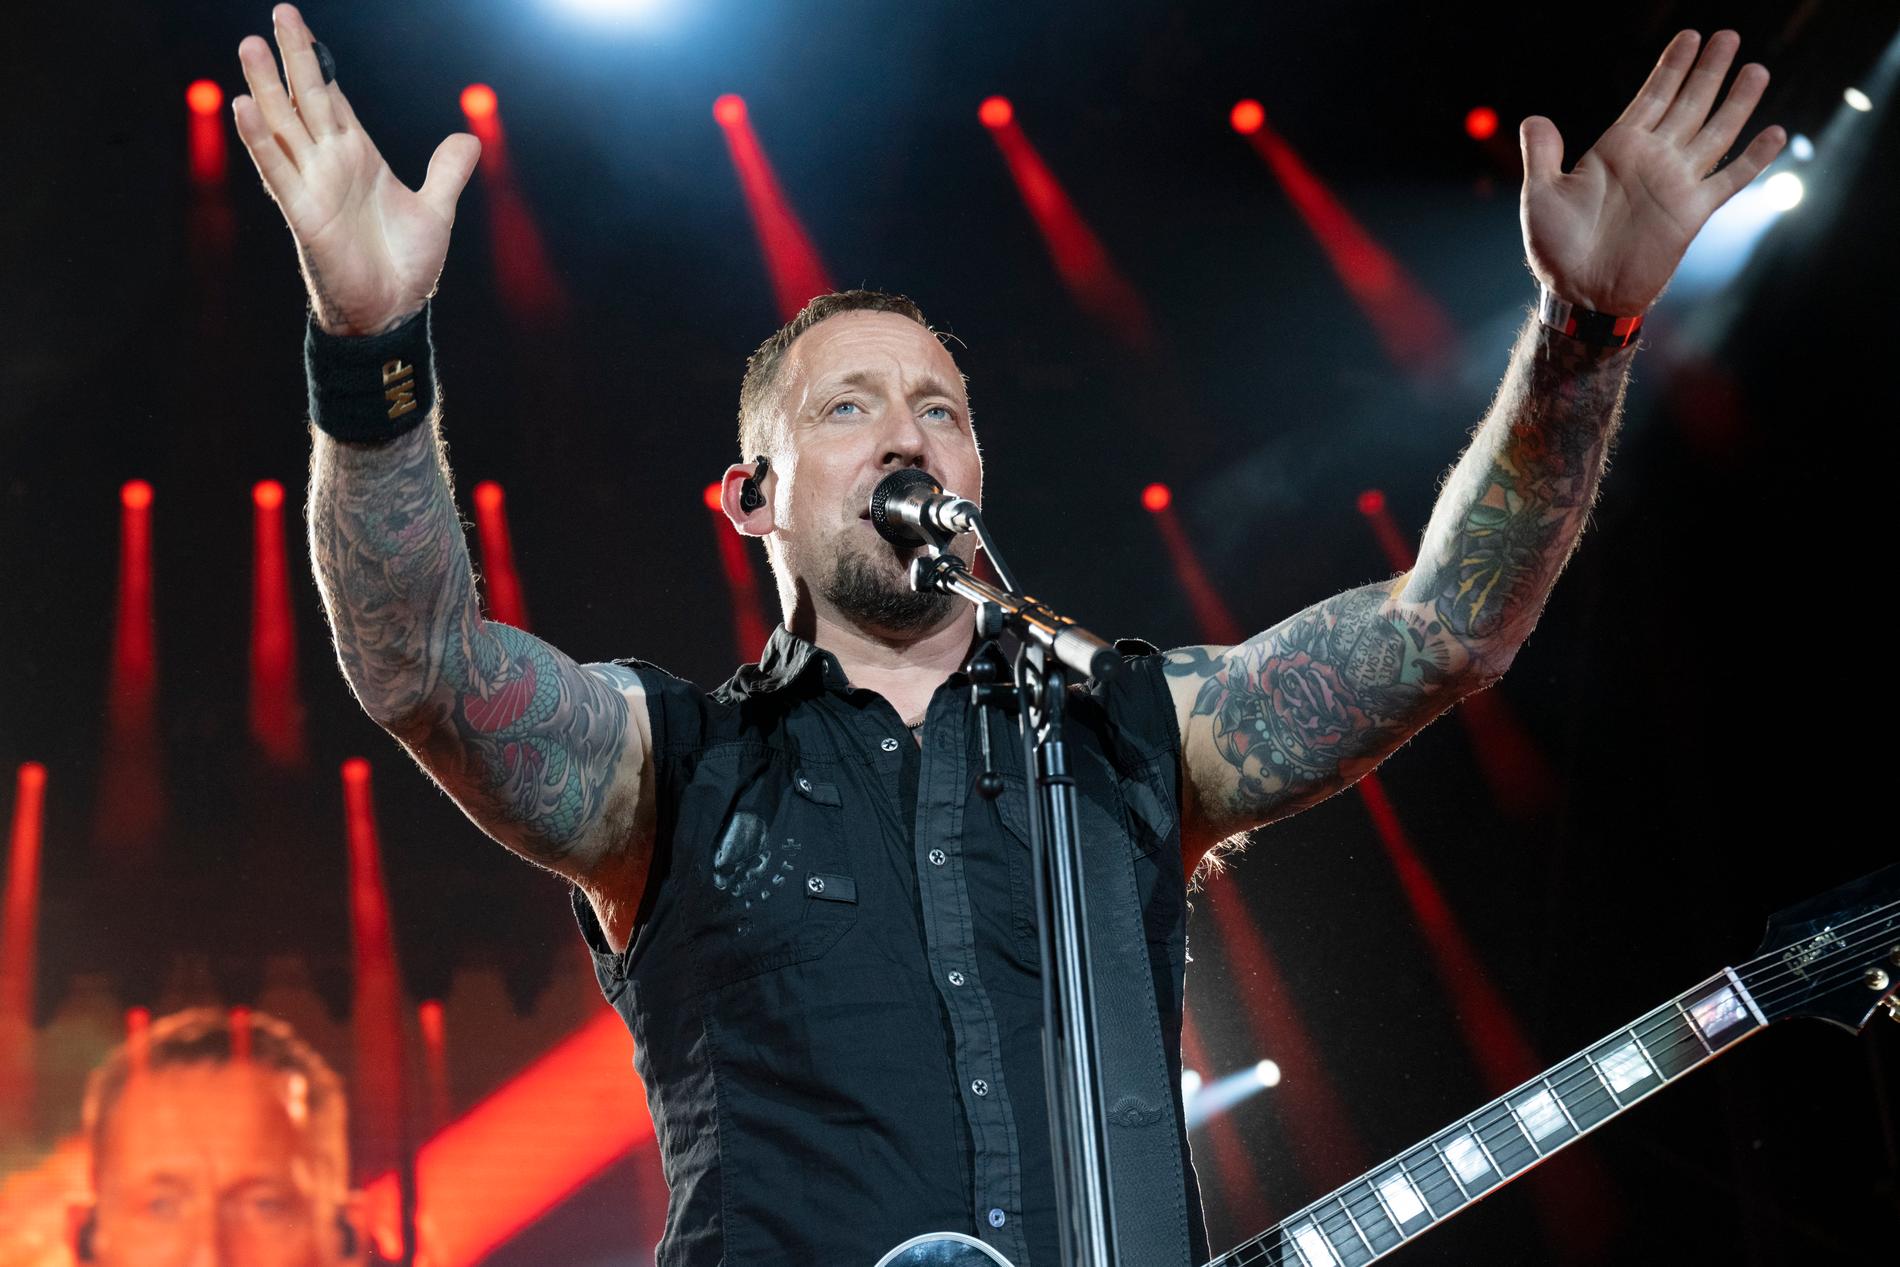 Danska bandet Volbeat med sångaren Michael Poulsen på Festivalscenen under Sweden Rock Festival.